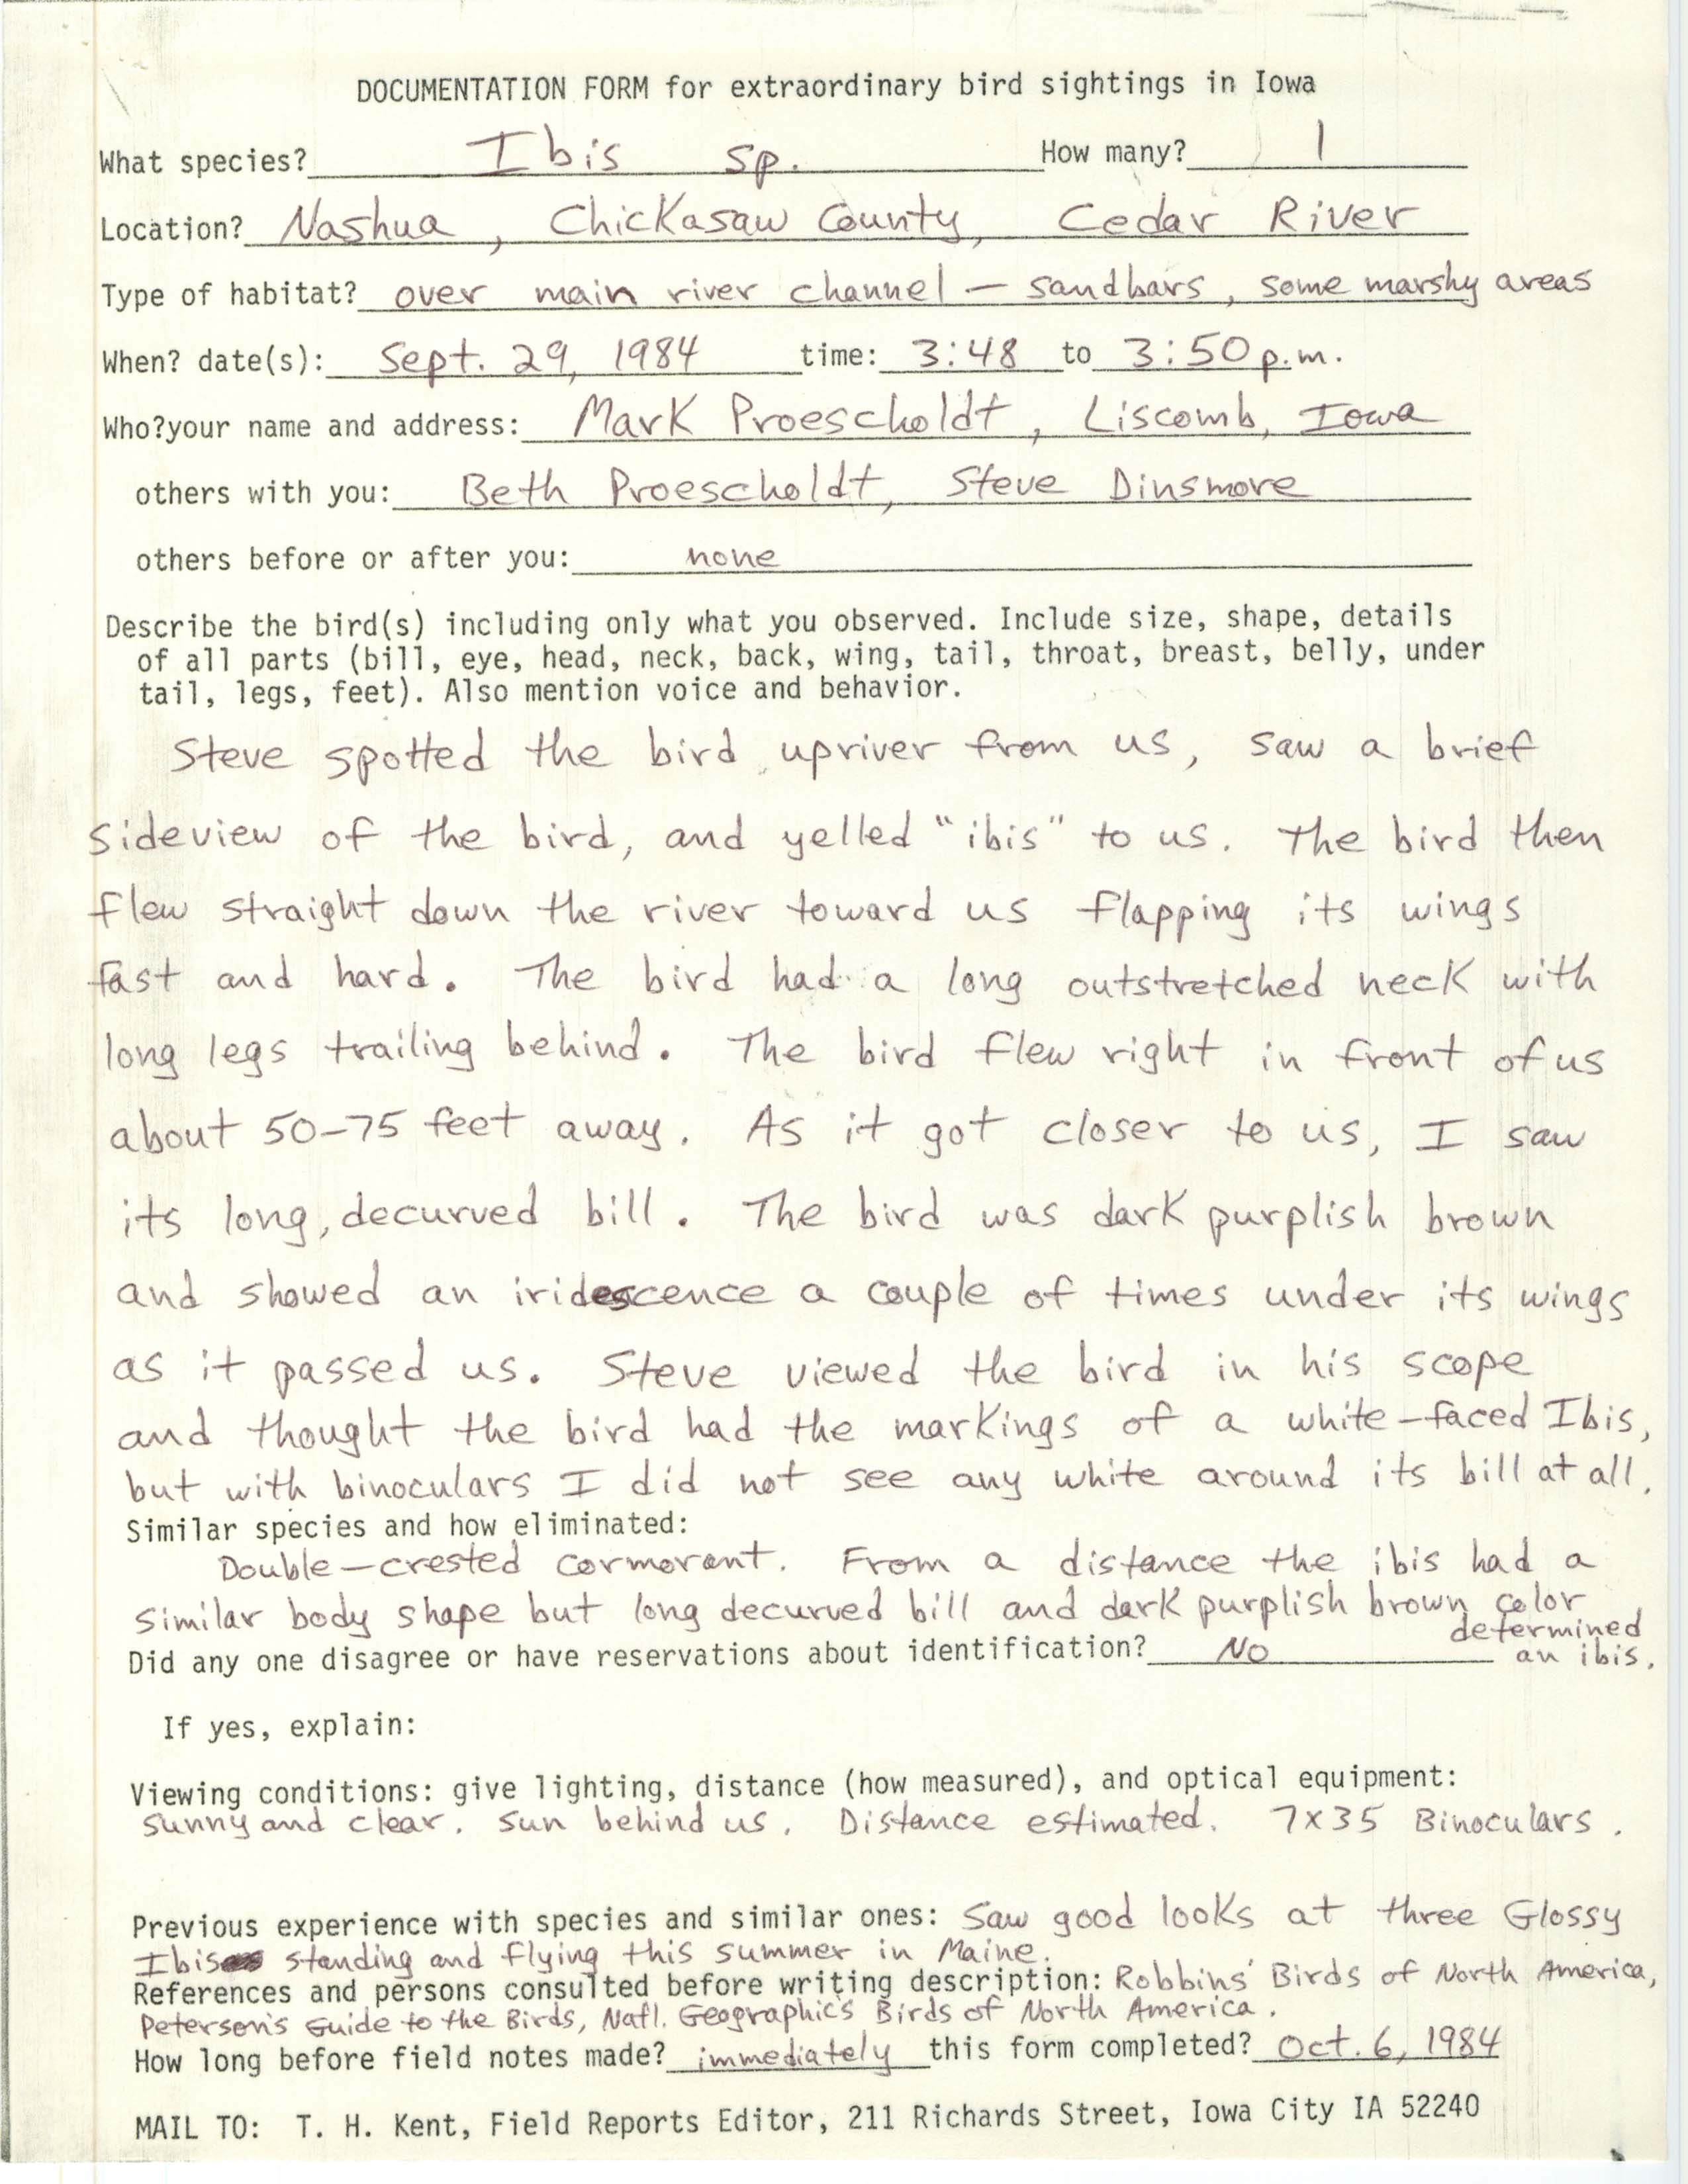 Rare bird documentation form for Ibis species at Nashua, 1984